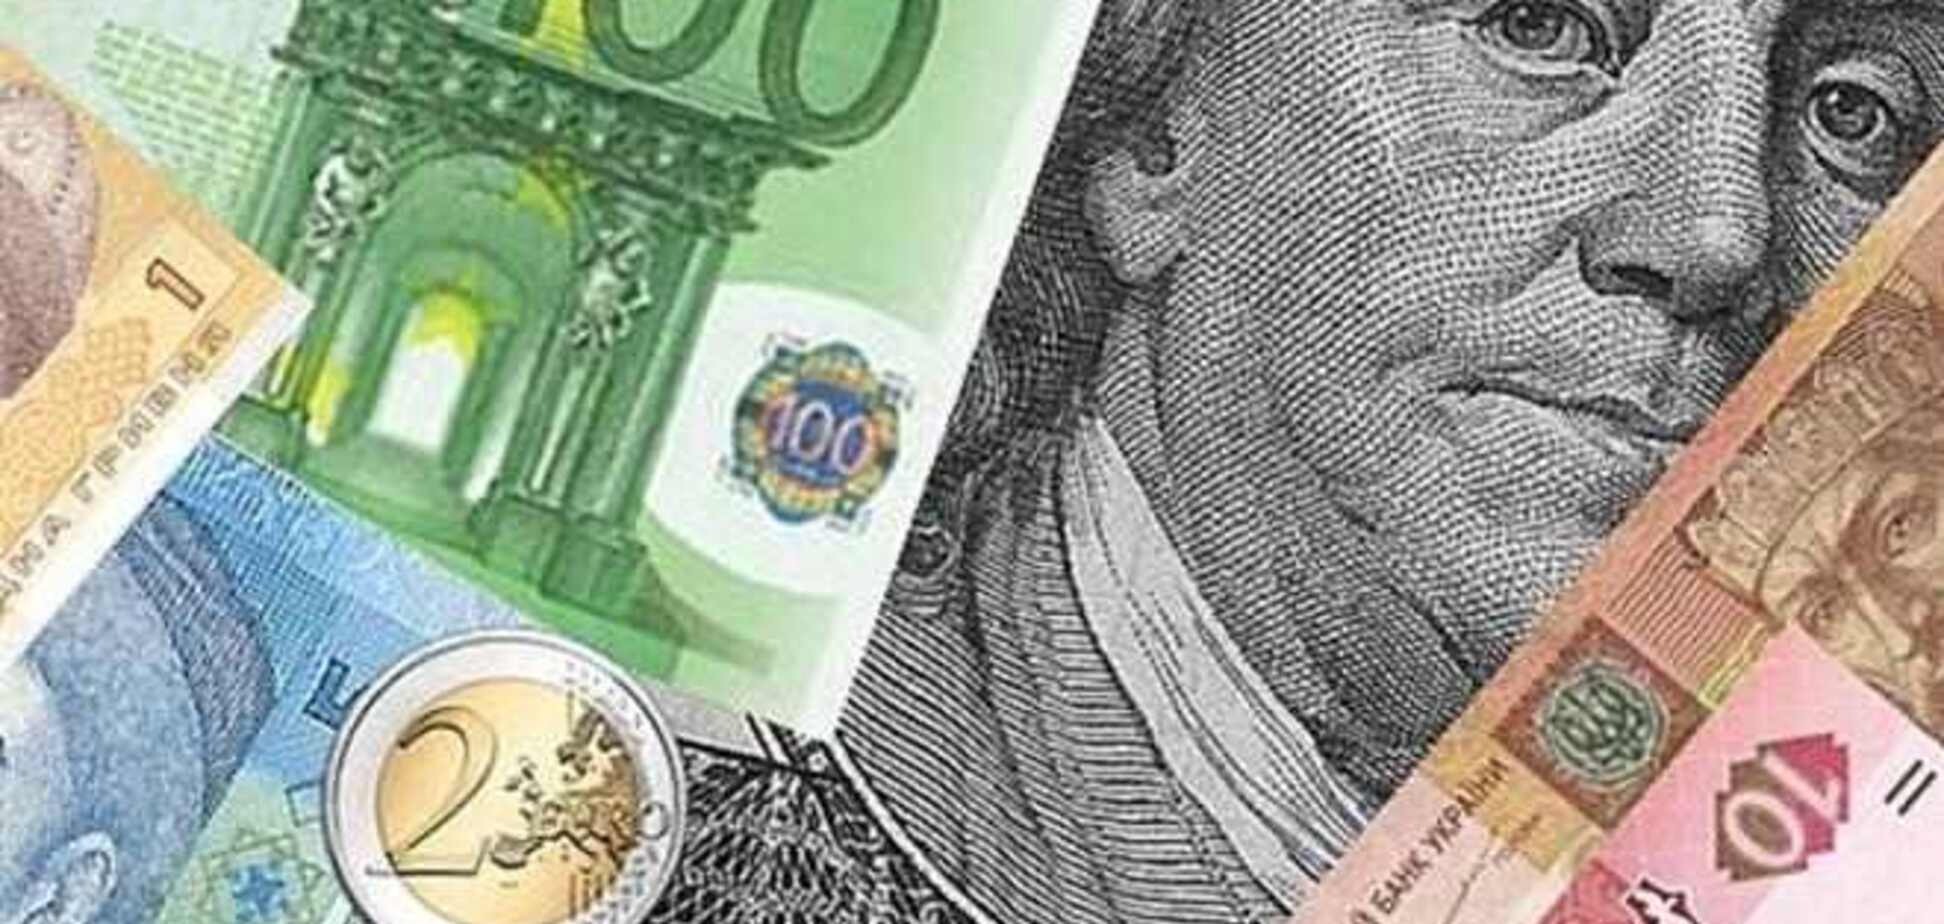 Курс валют по отношению к гривне повысился из-за ситуации в стране - эксперт